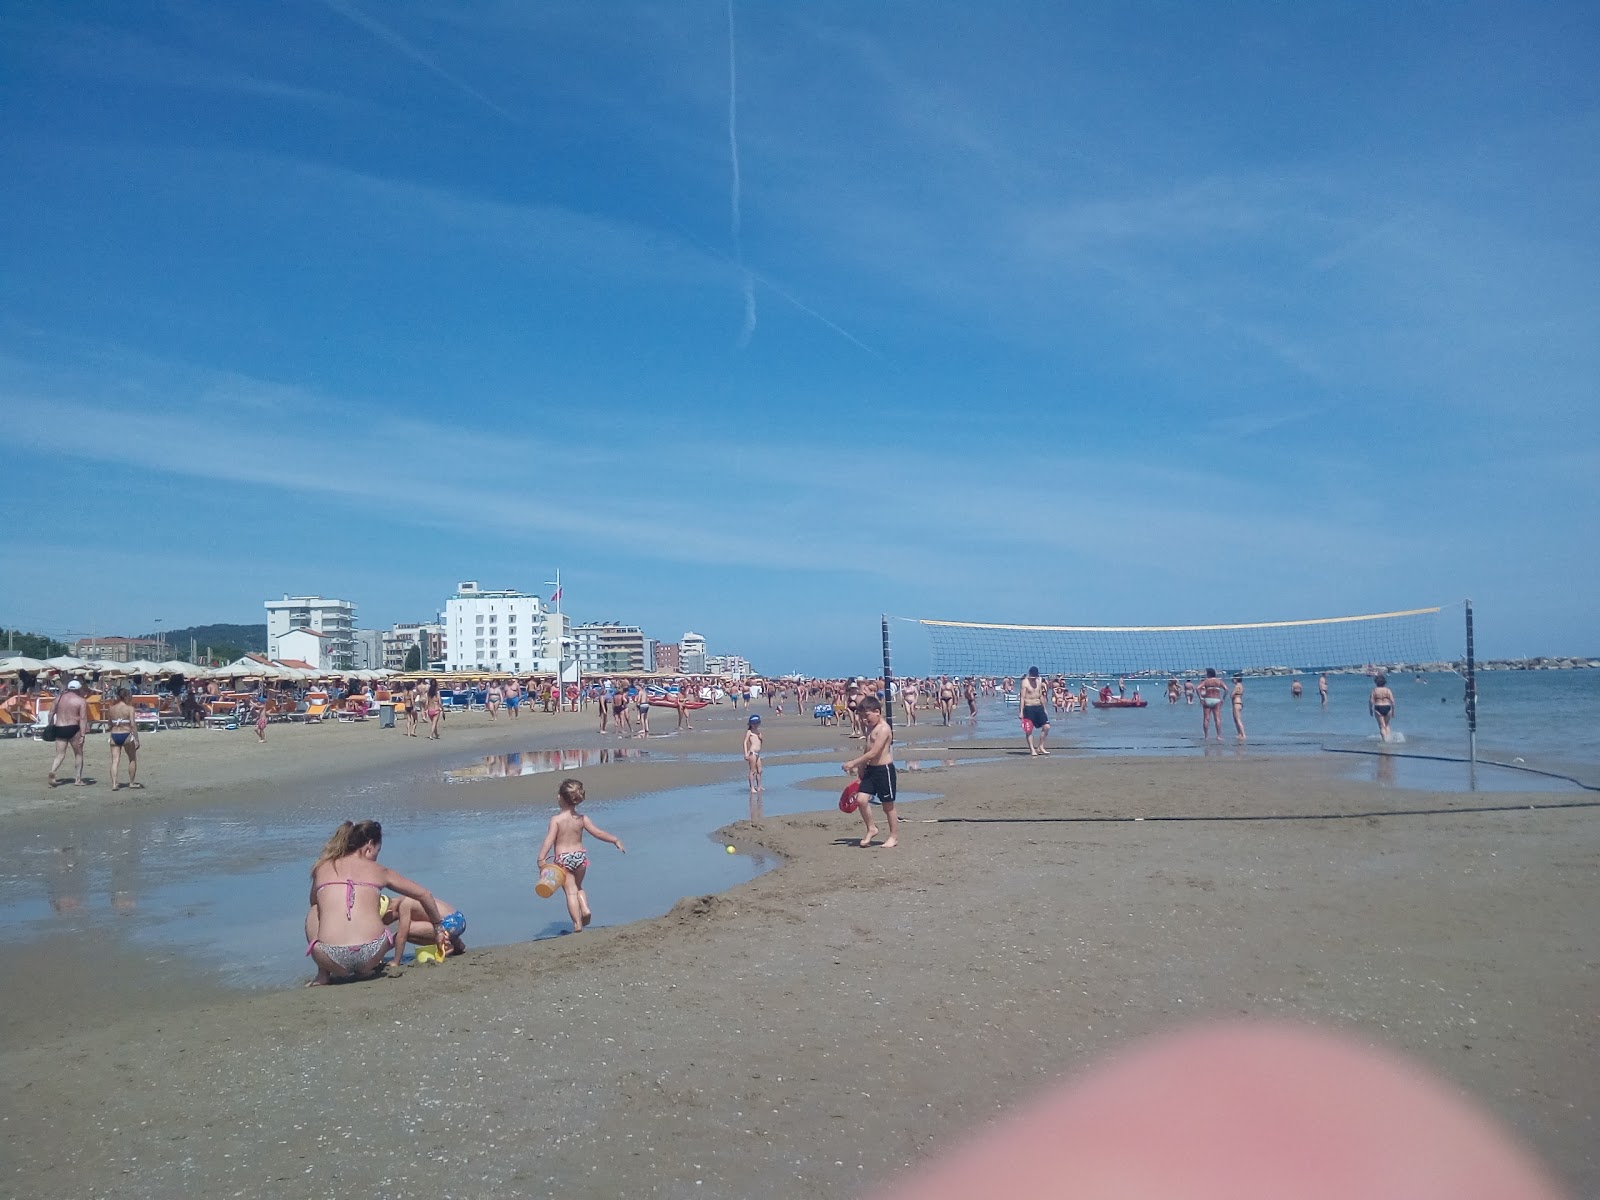 Pesaro beach III'in fotoğrafı çok temiz temizlik seviyesi ile